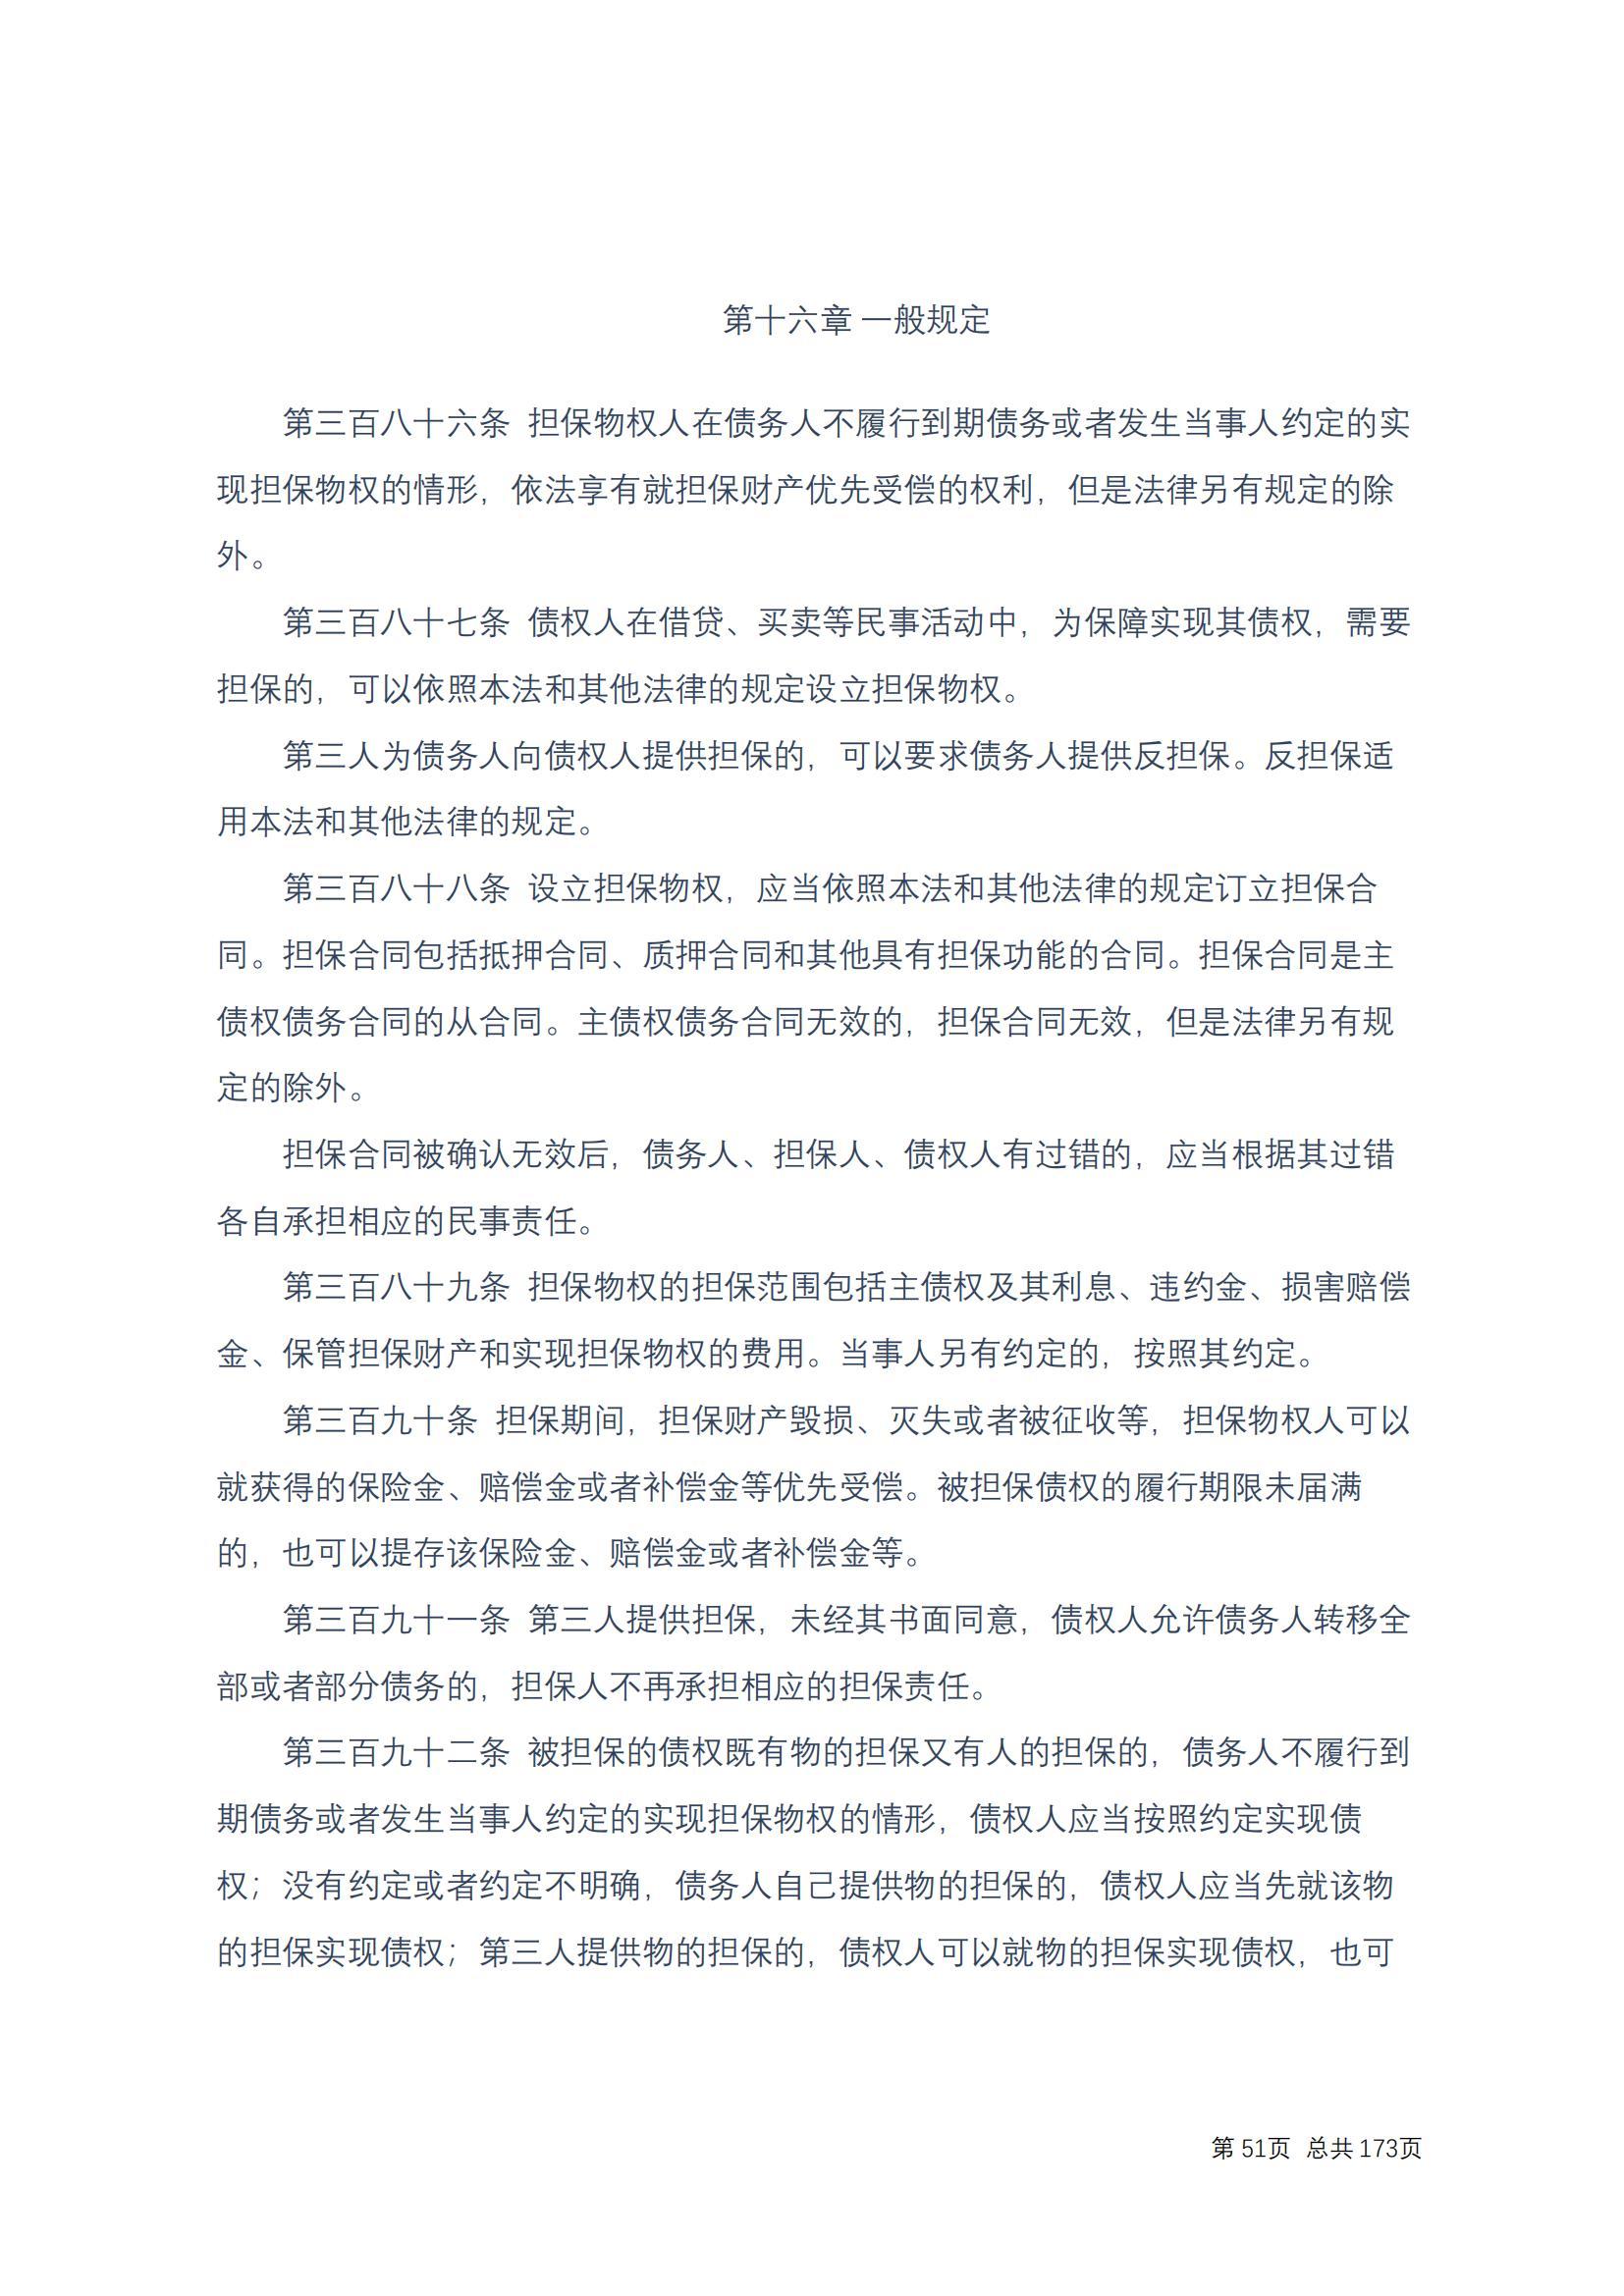 中华人民共和国民法典 修改过_50